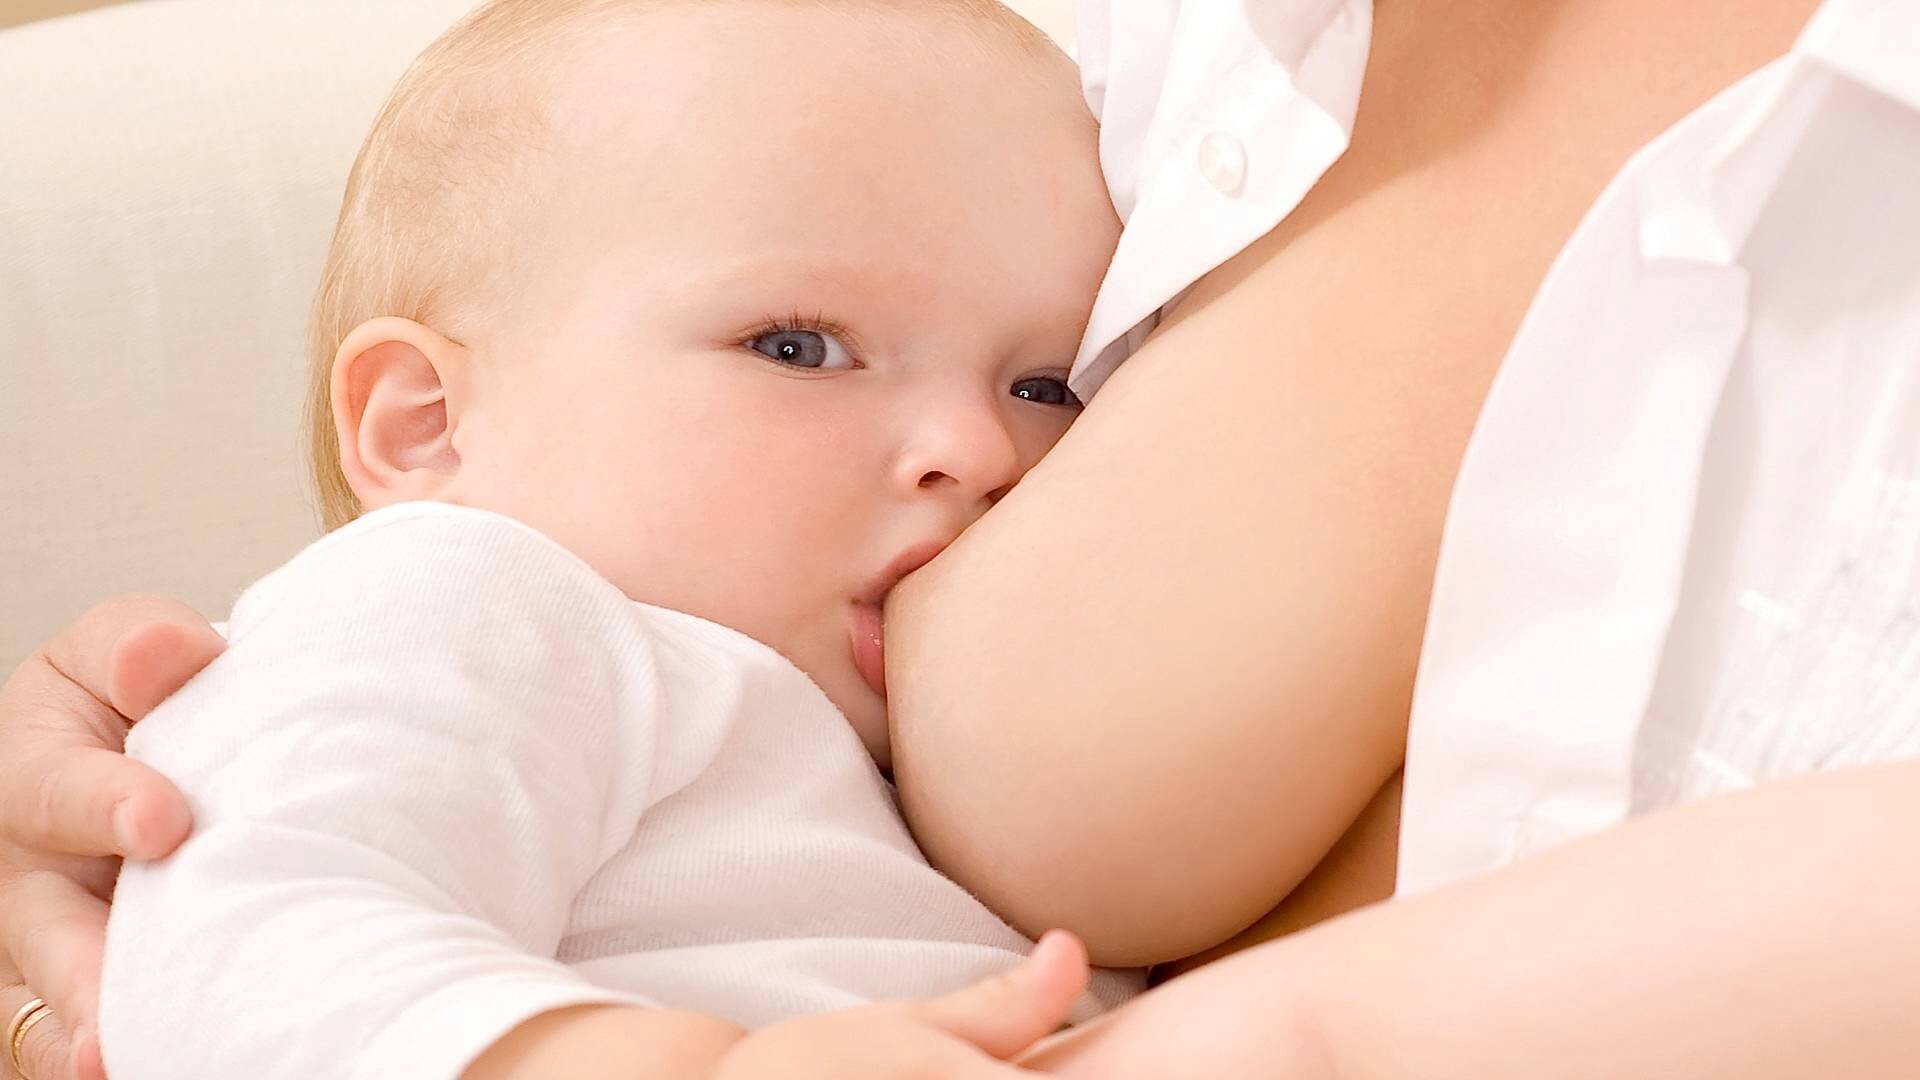 Mamá, aquí tienes los trucos definitivos para producir más leche para tu bebé